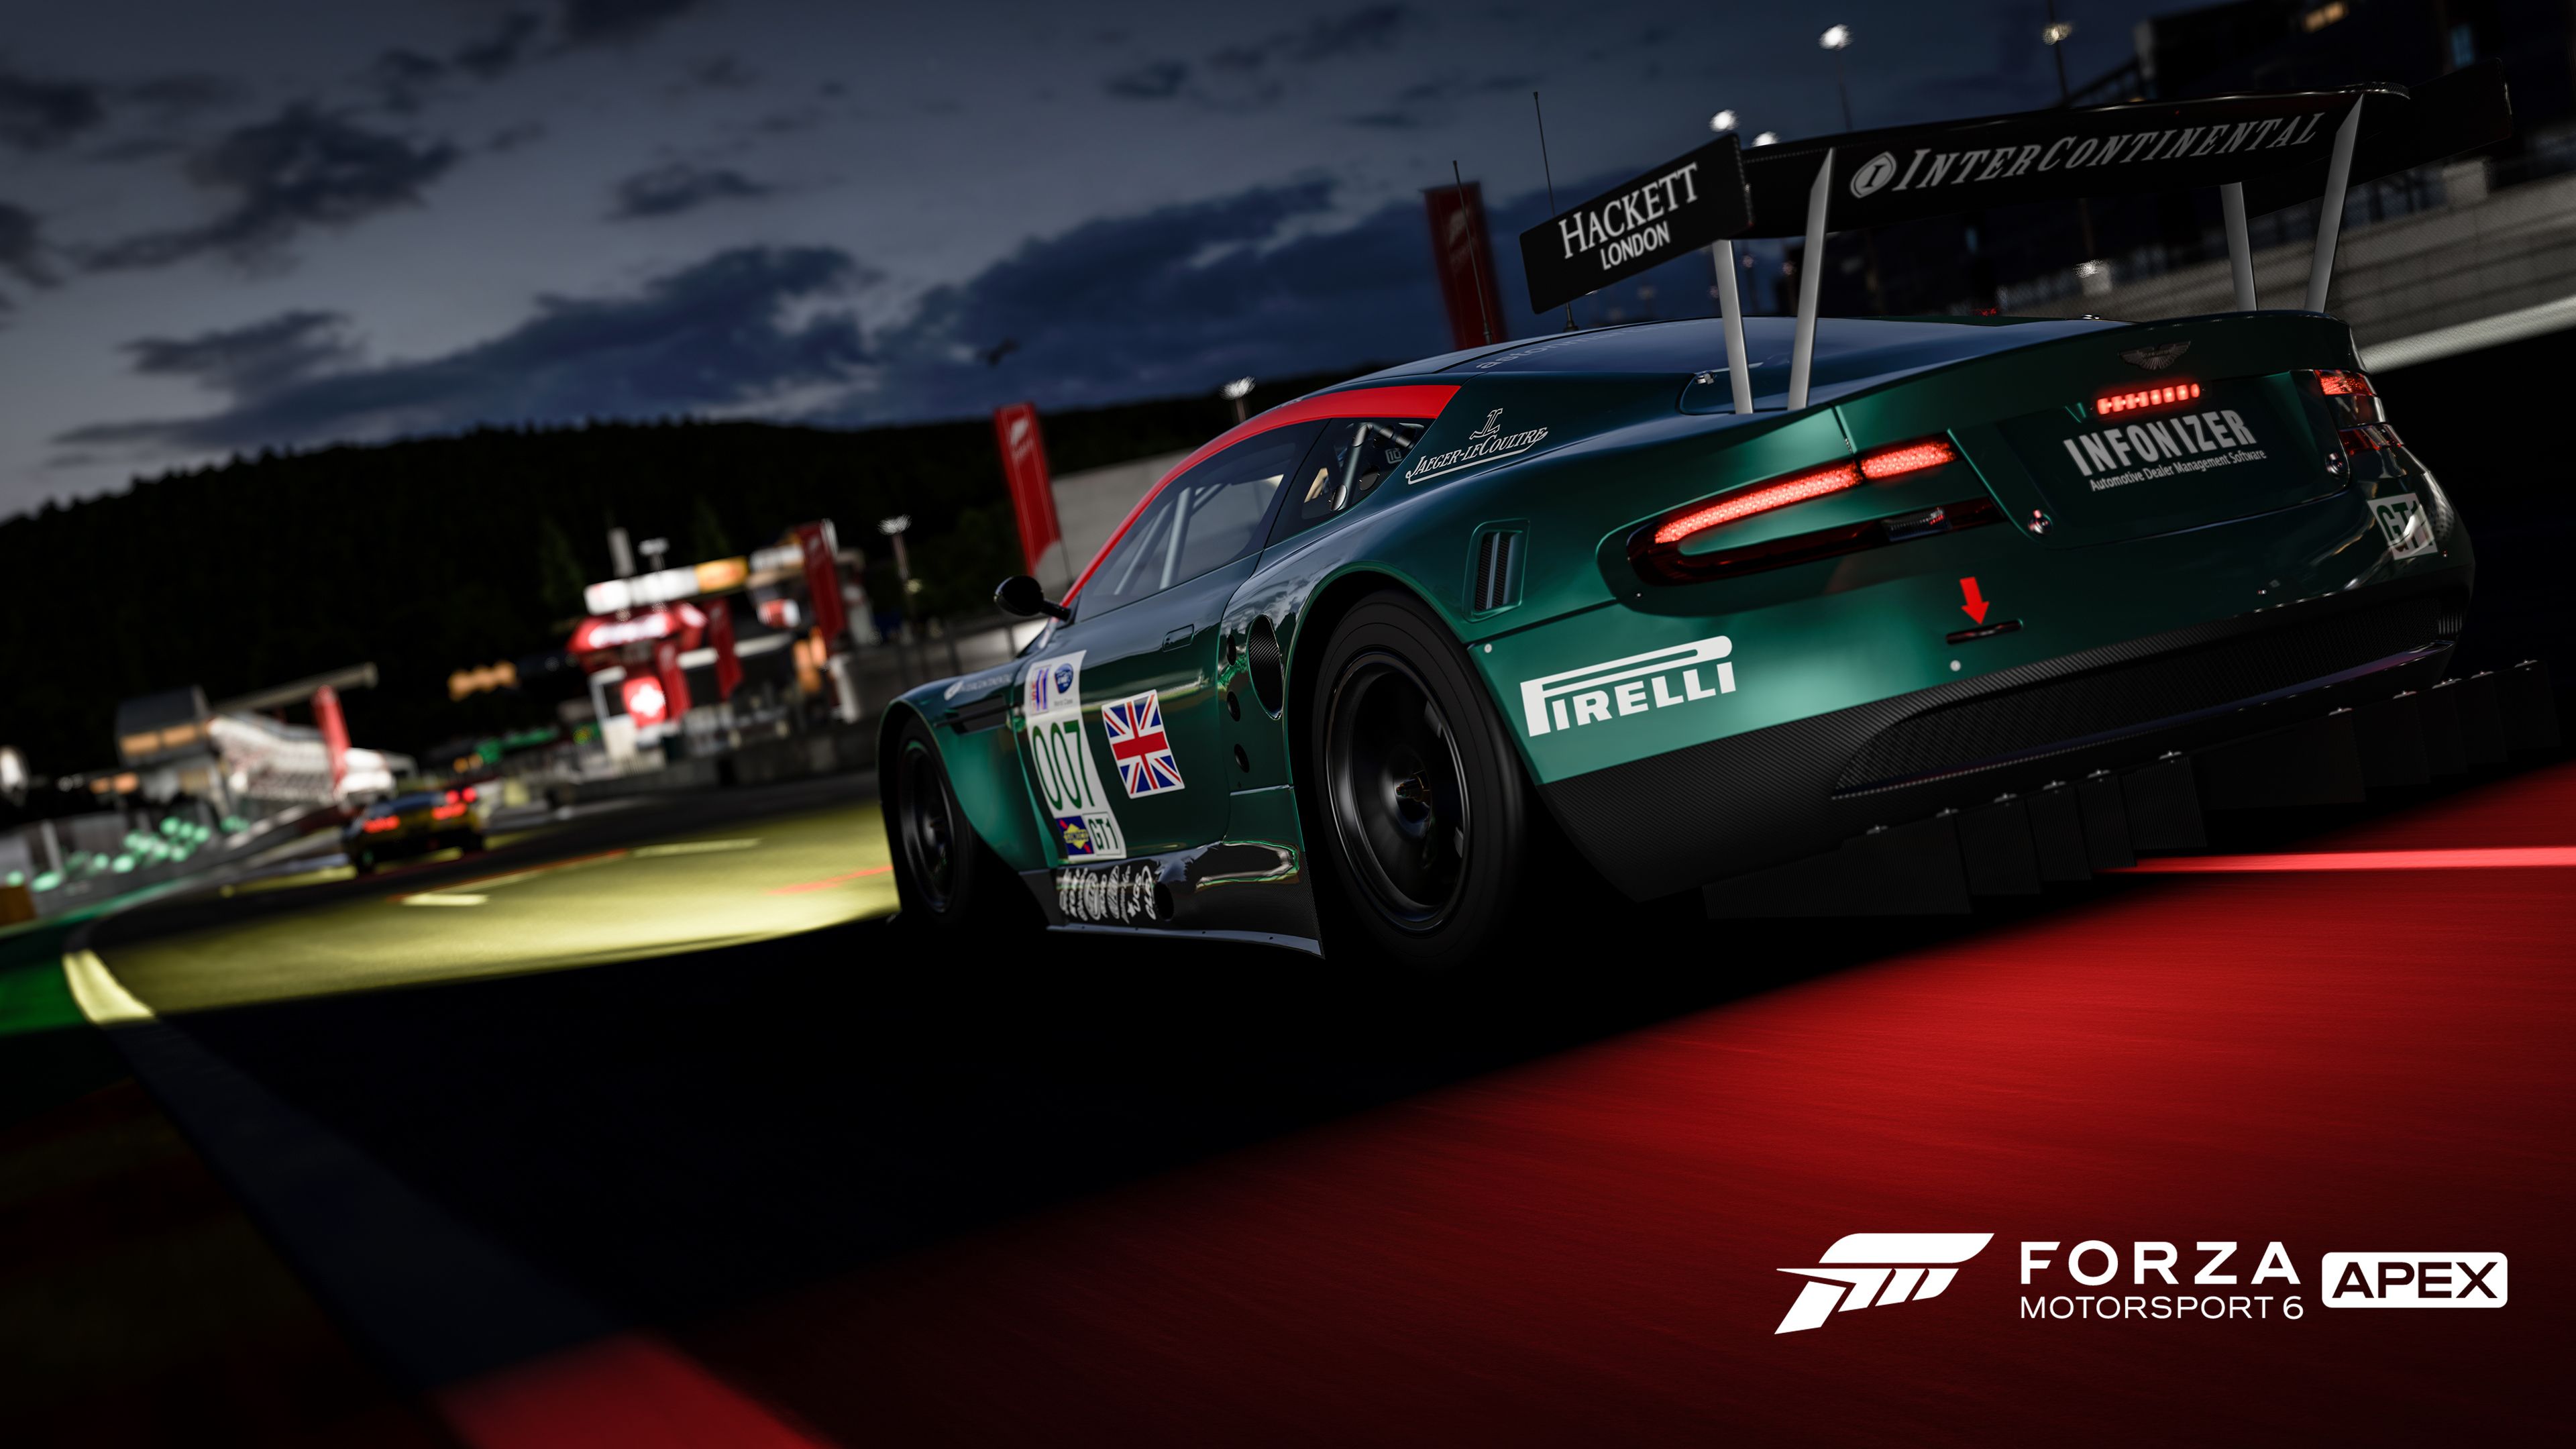 Descargar fondos de escritorio de Forza Motorsport 6: Ápice HD